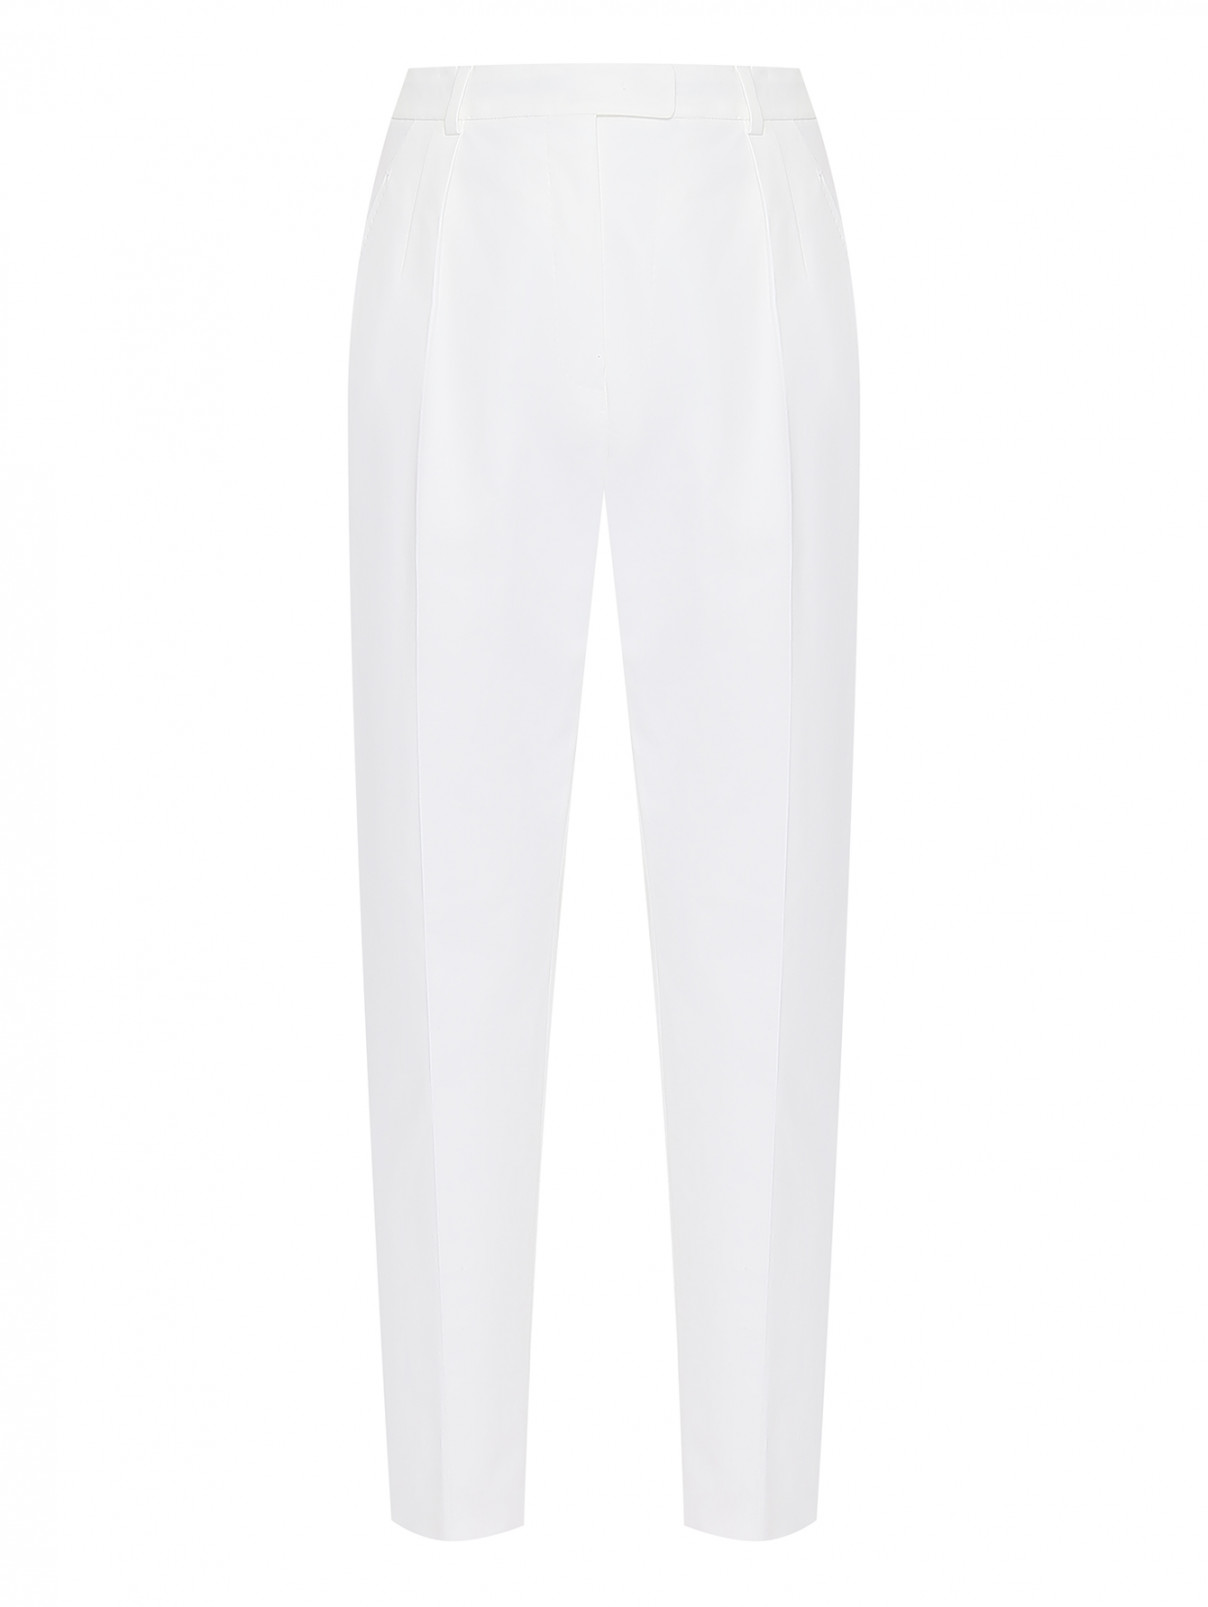 Хлопковые брюки с защипами Max Mara  –  Общий вид  – Цвет:  Белый